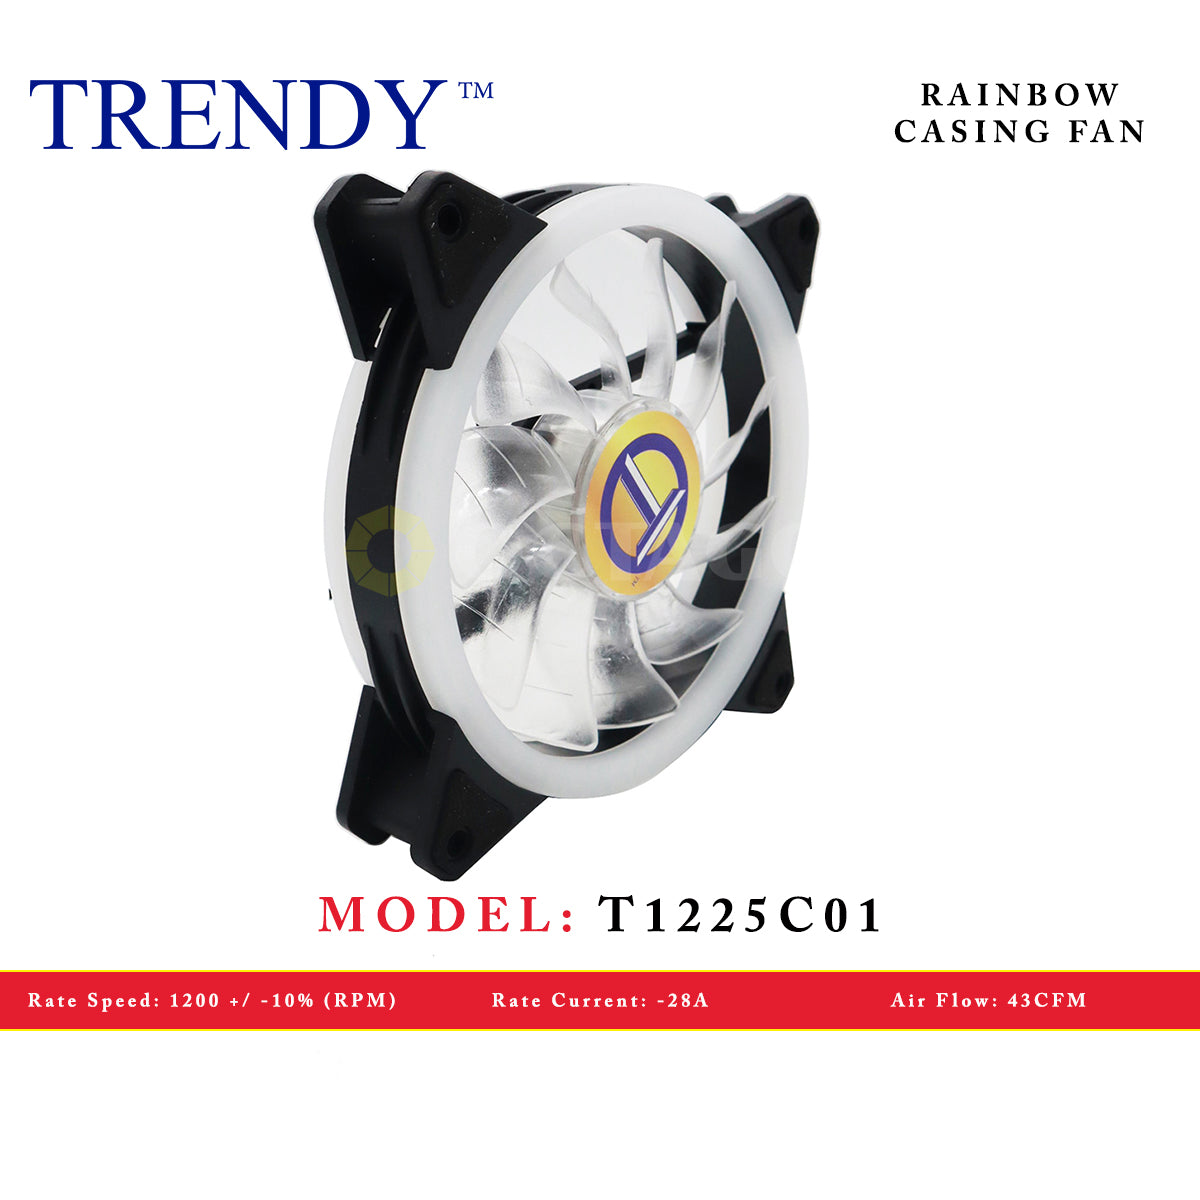 TRENDY T1225C01 RAINBOW CASING FAN